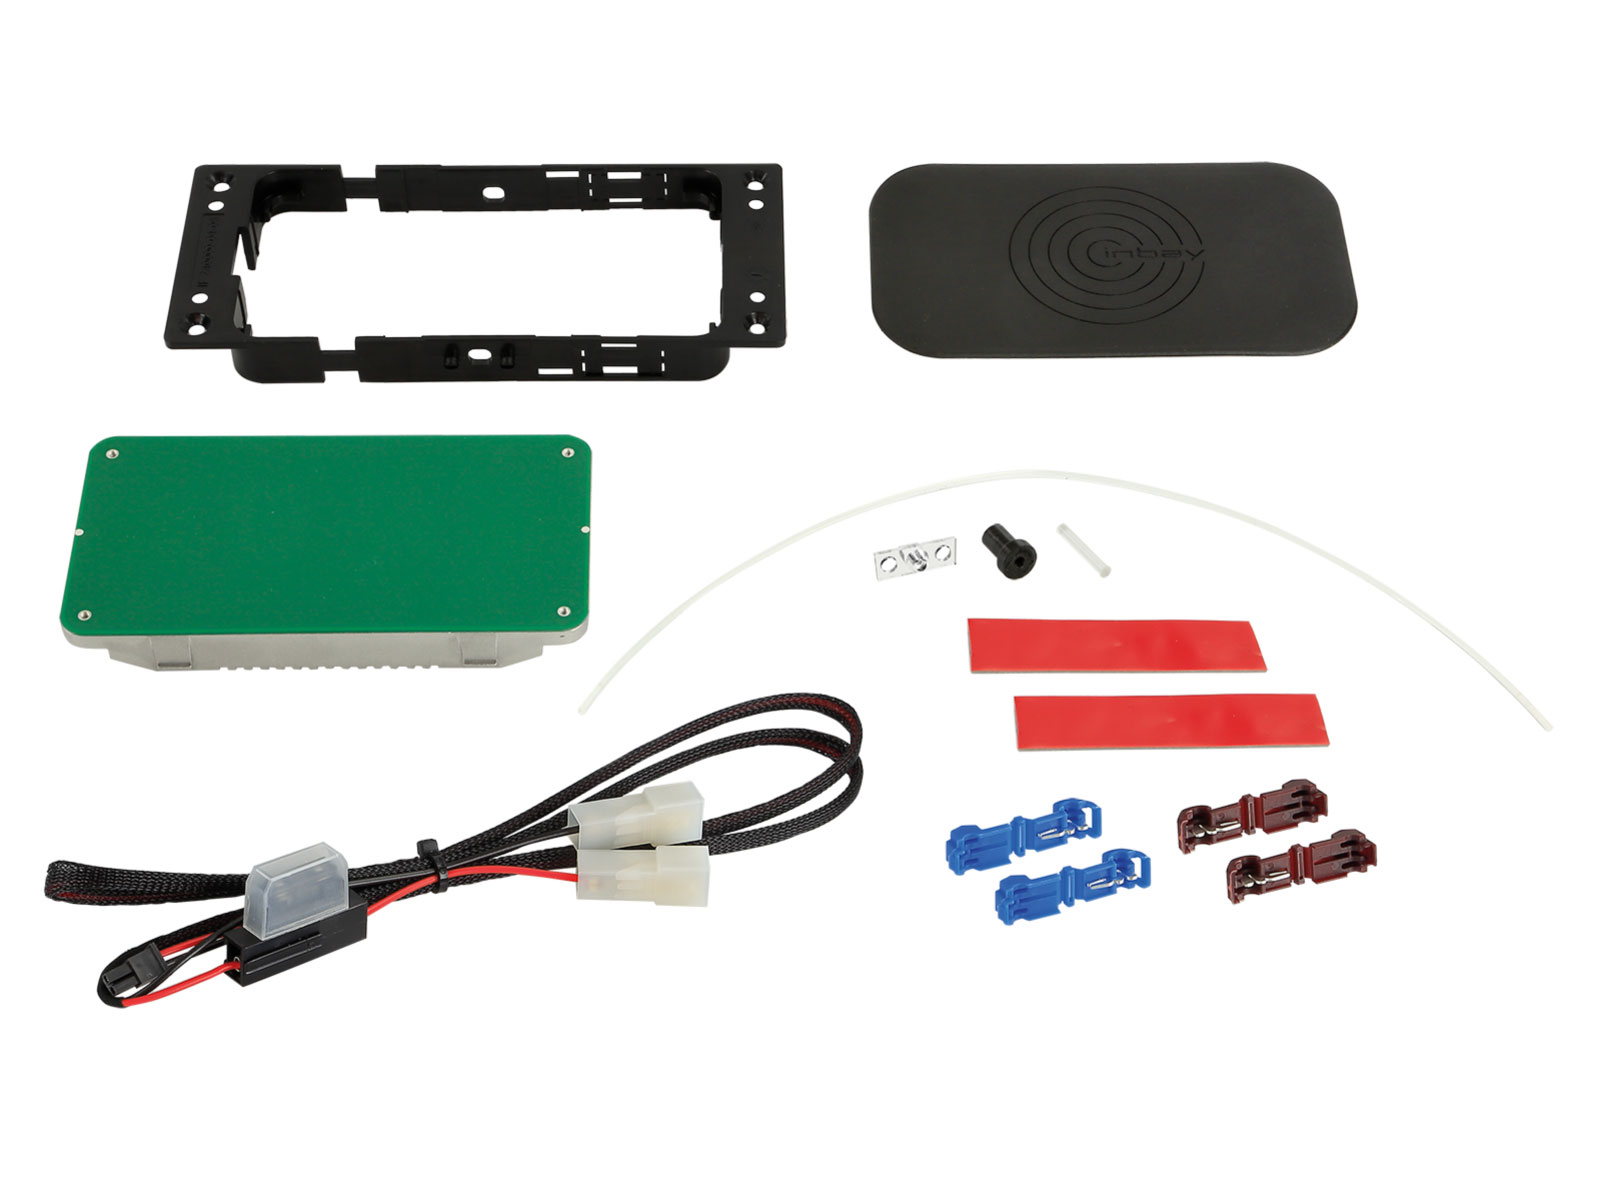 Inbay Kit 3 Spulen 12V Kabel / Lichtleiter Kit 